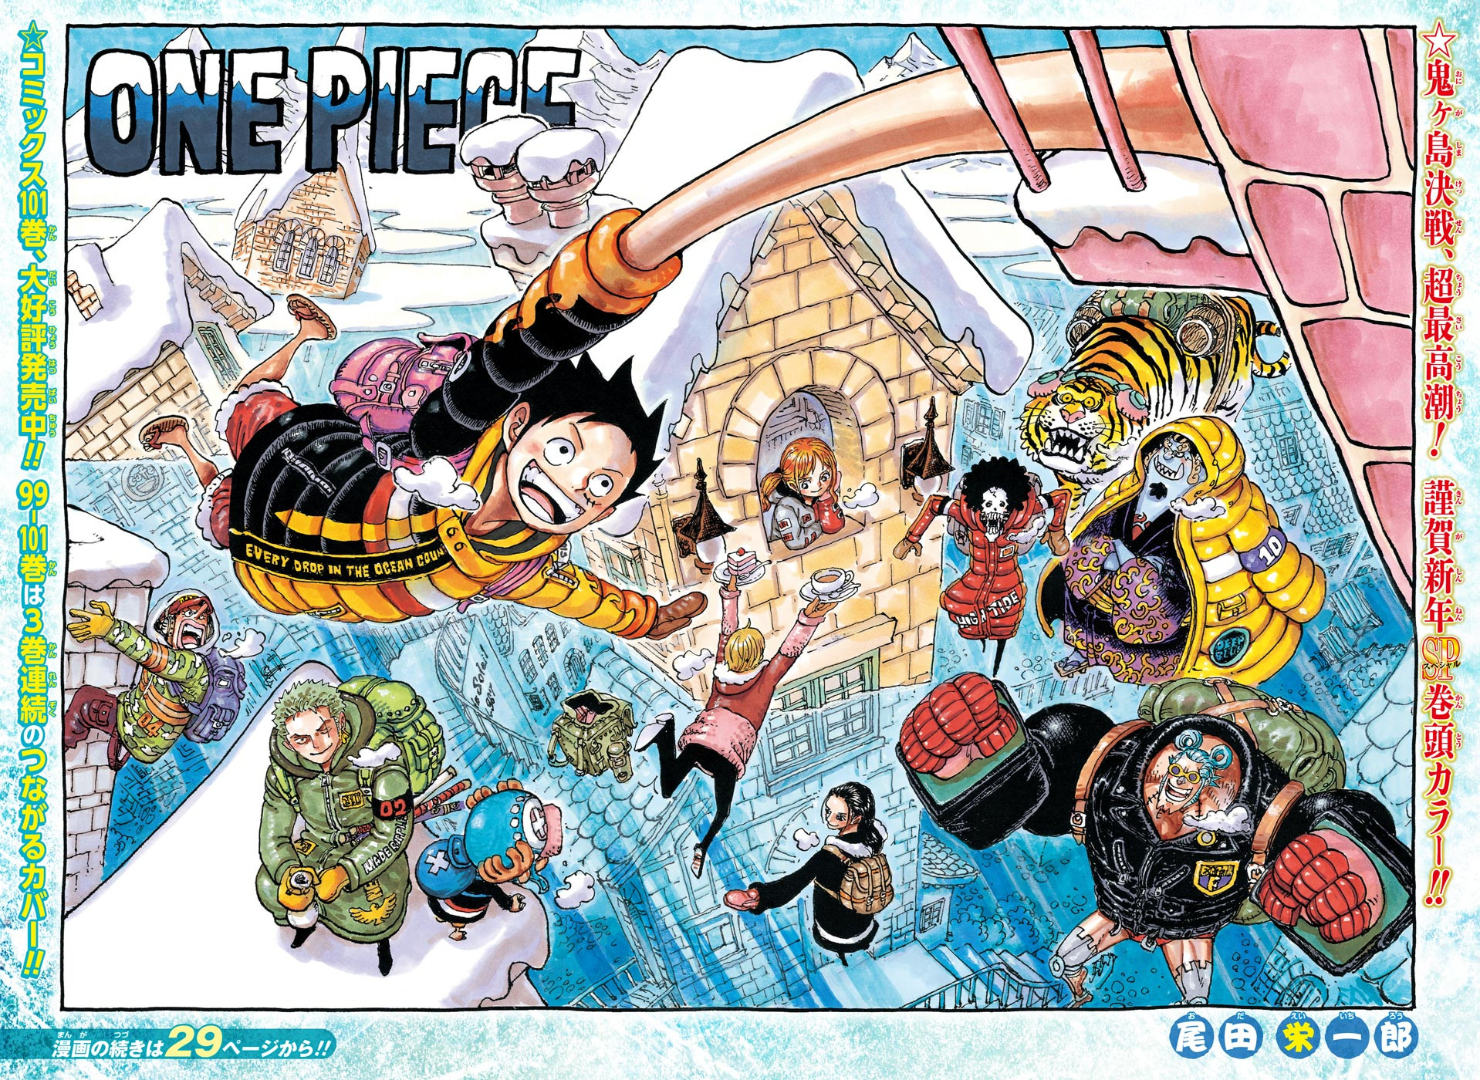 Dónde puedes leer el manga One Piece 1032 gratis en español